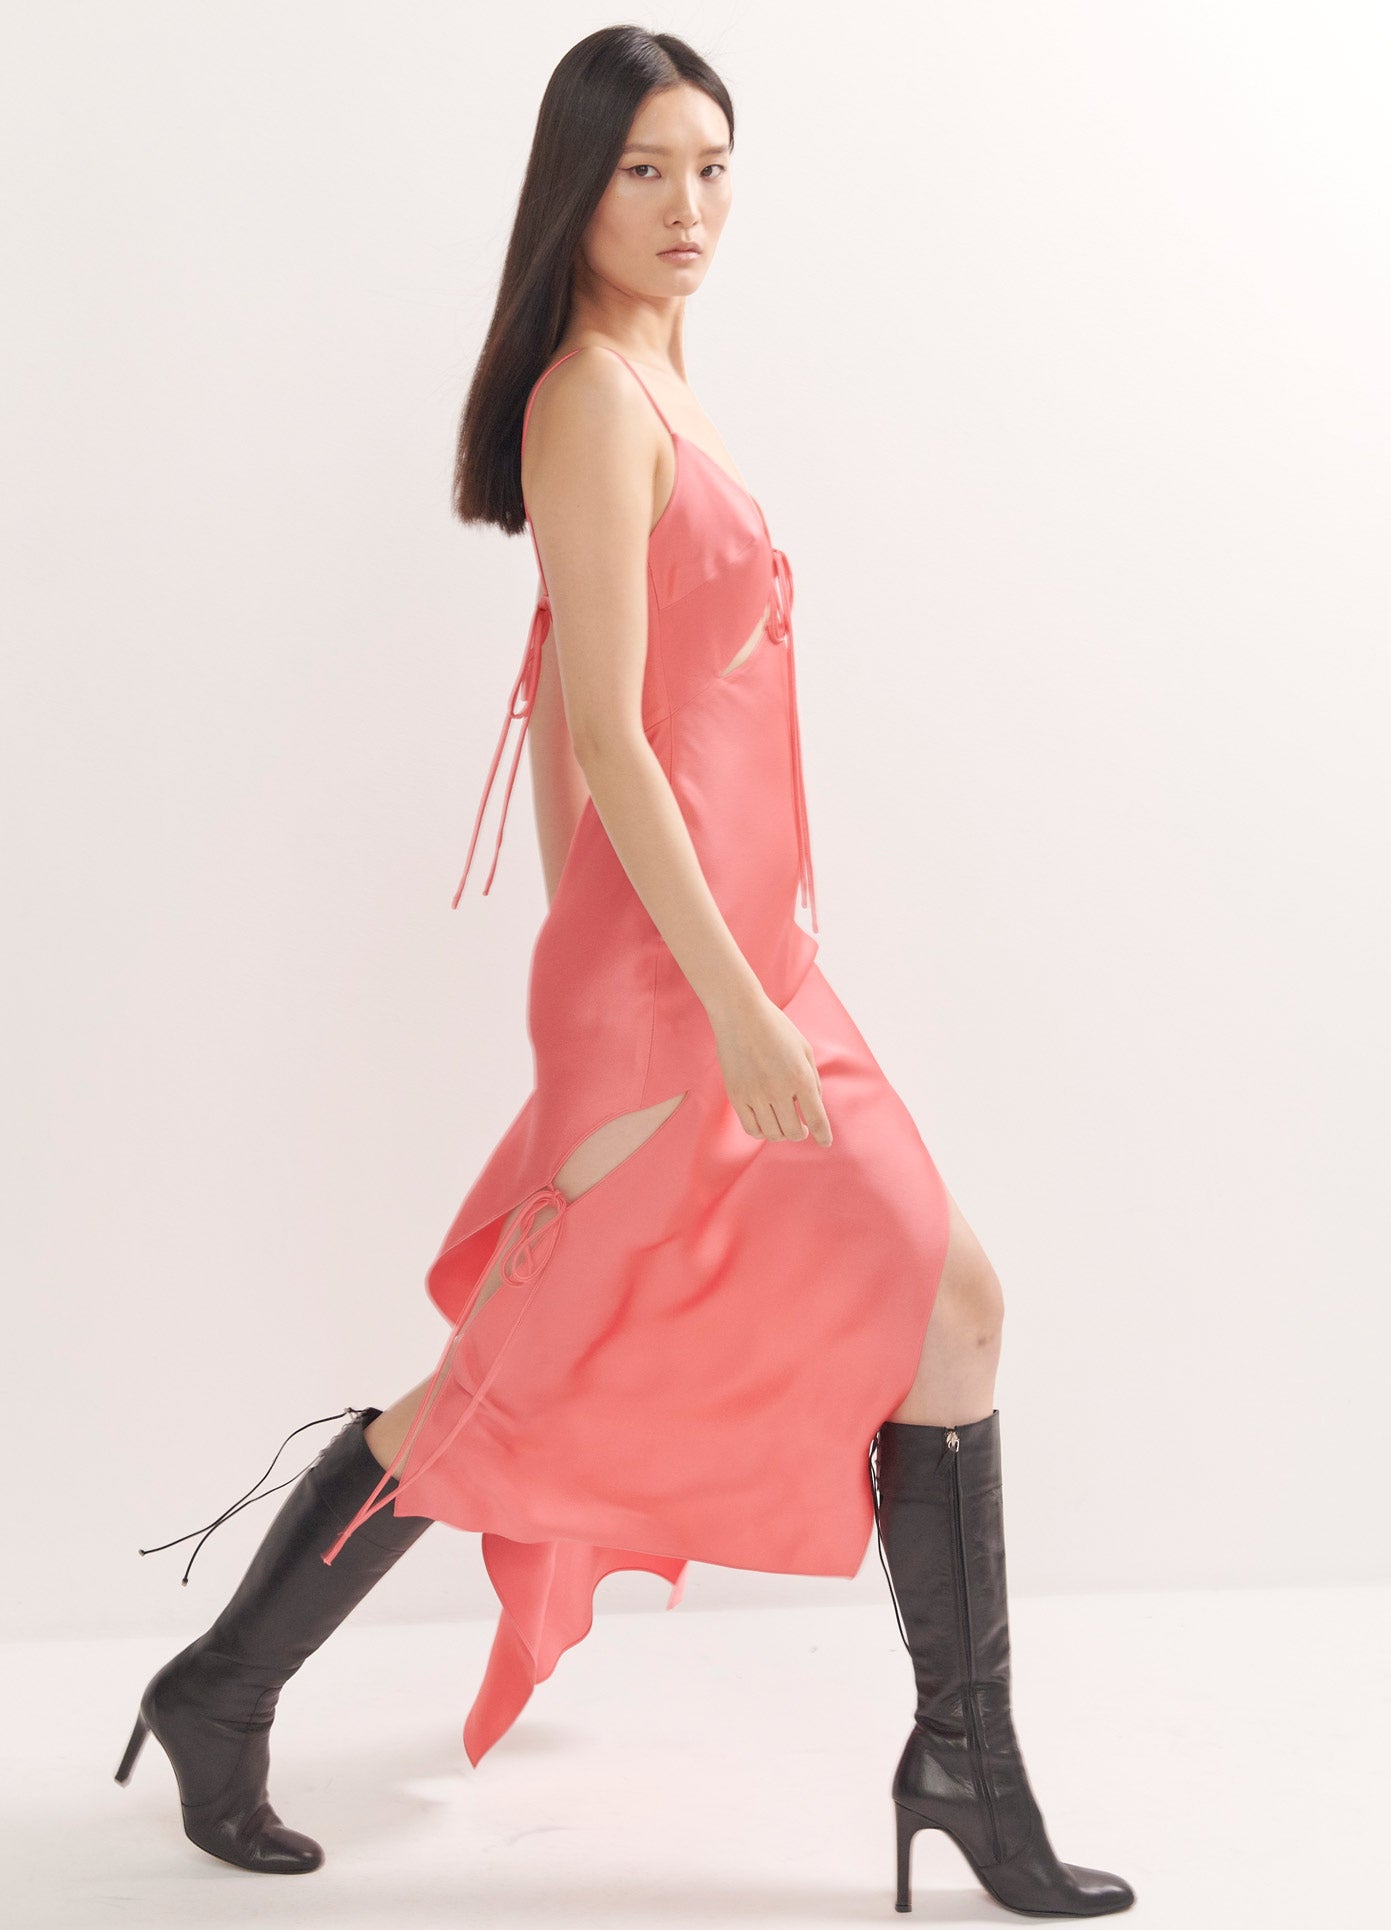 MONSE Slip Dress in Watermelon on Model Walking Right Side View